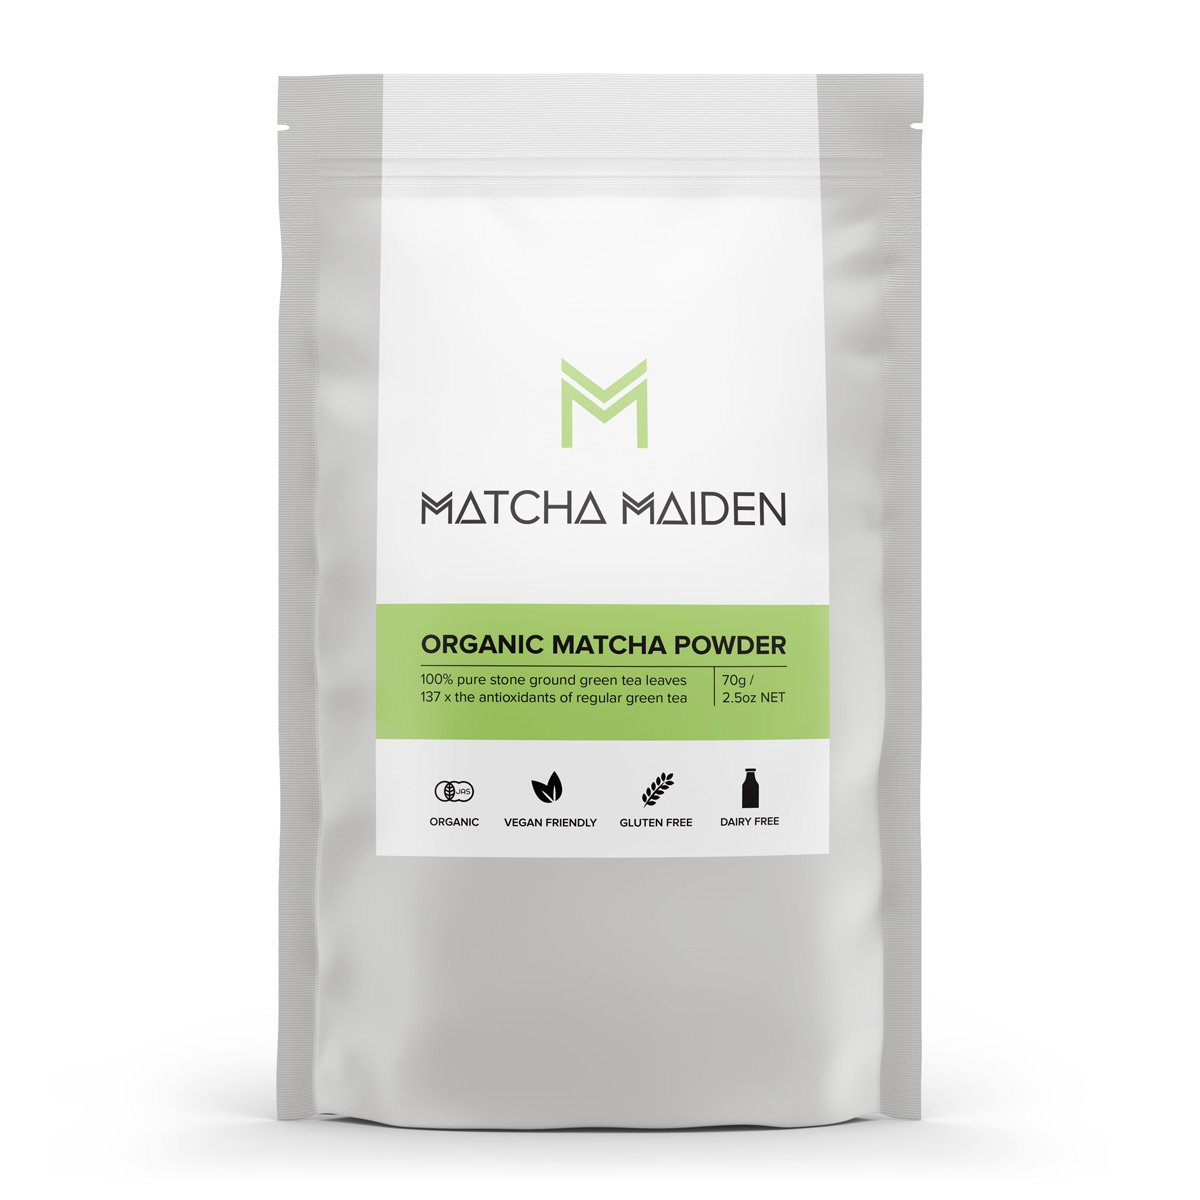 Matcha Maiden Organic Matcha Powder